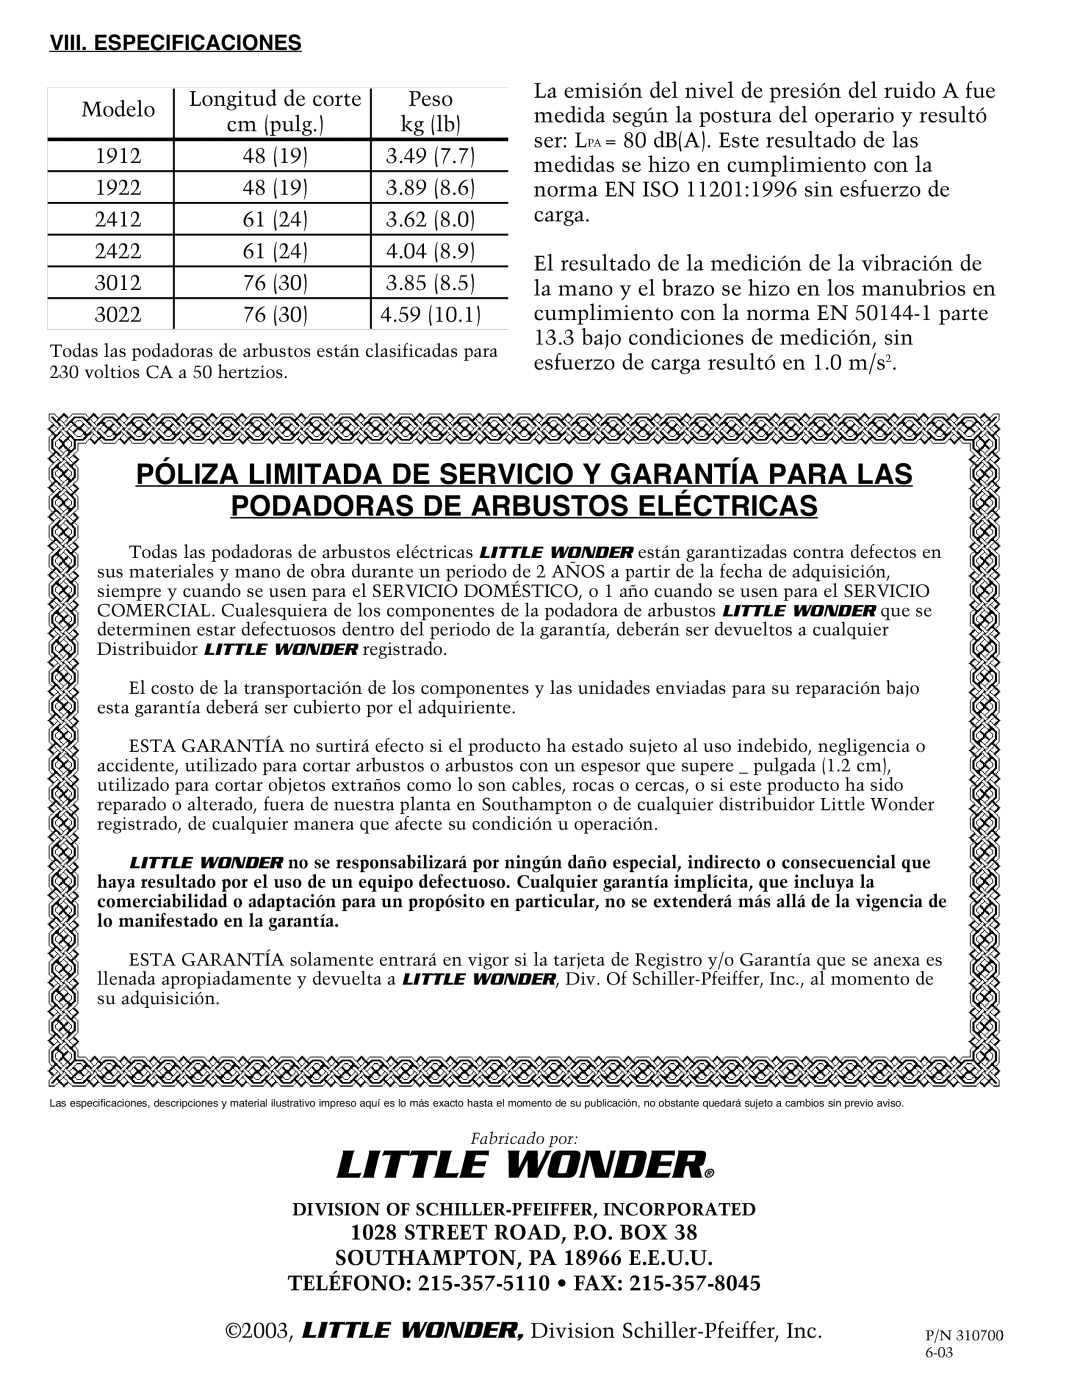 Little Wonder 2412, 3022 Póliza Limitada De Servicio Y Garantía Para Las, Podadoras De Arbustos Eléctricas, Little Wonder 